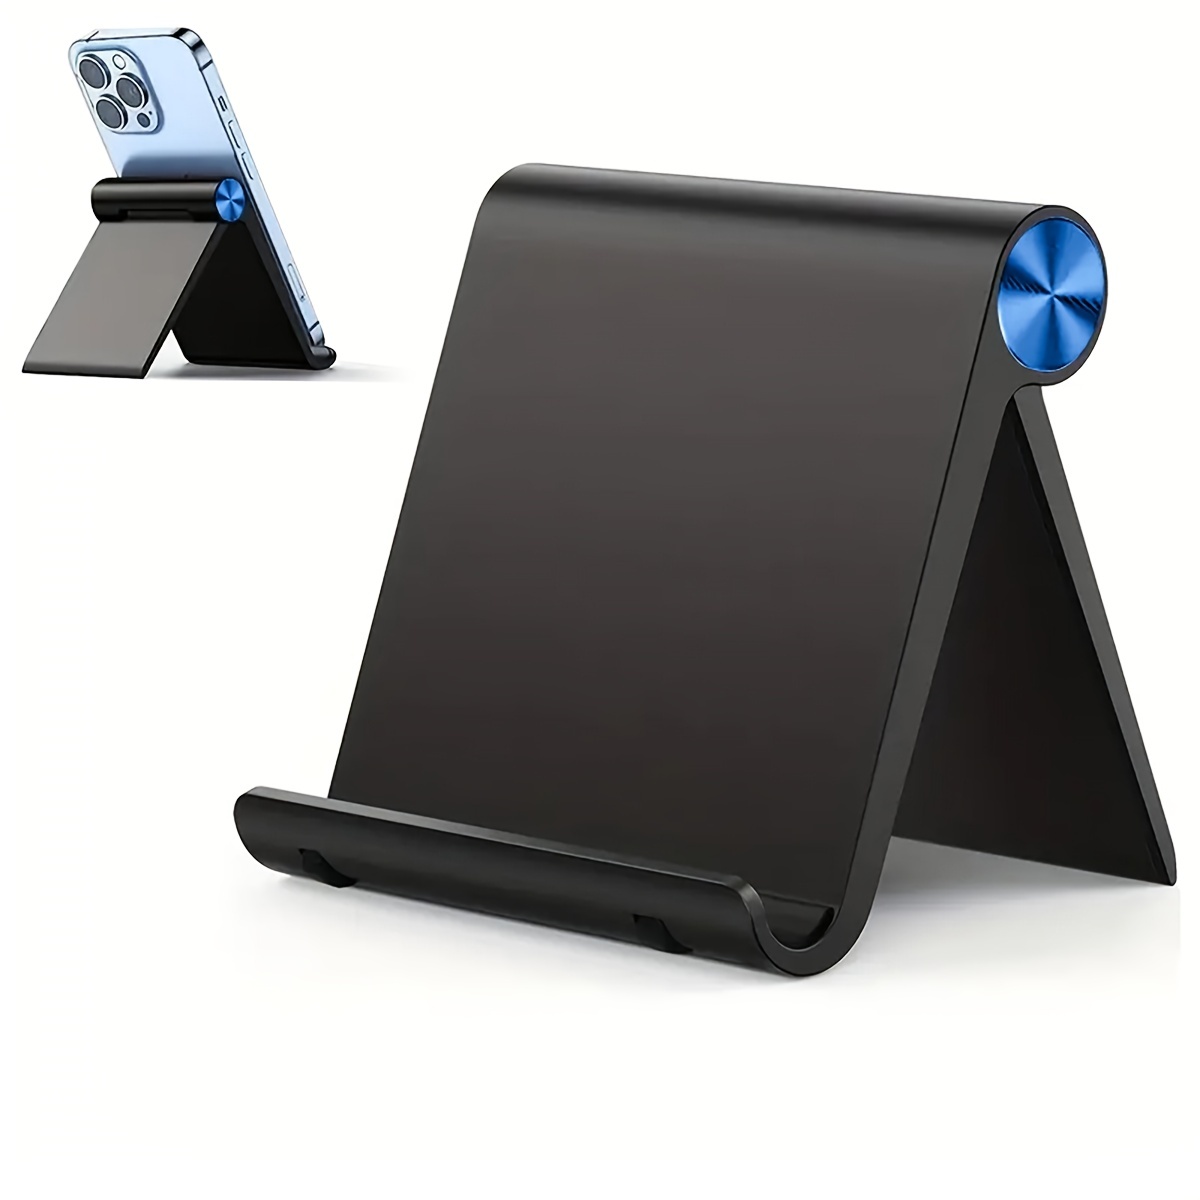 Support de tablette pour lit, réglable et pliable avec rotation à 360  degrés pour iphone, ipad, téléphone portable, tablette, Kindle Fire (bras  étendu)